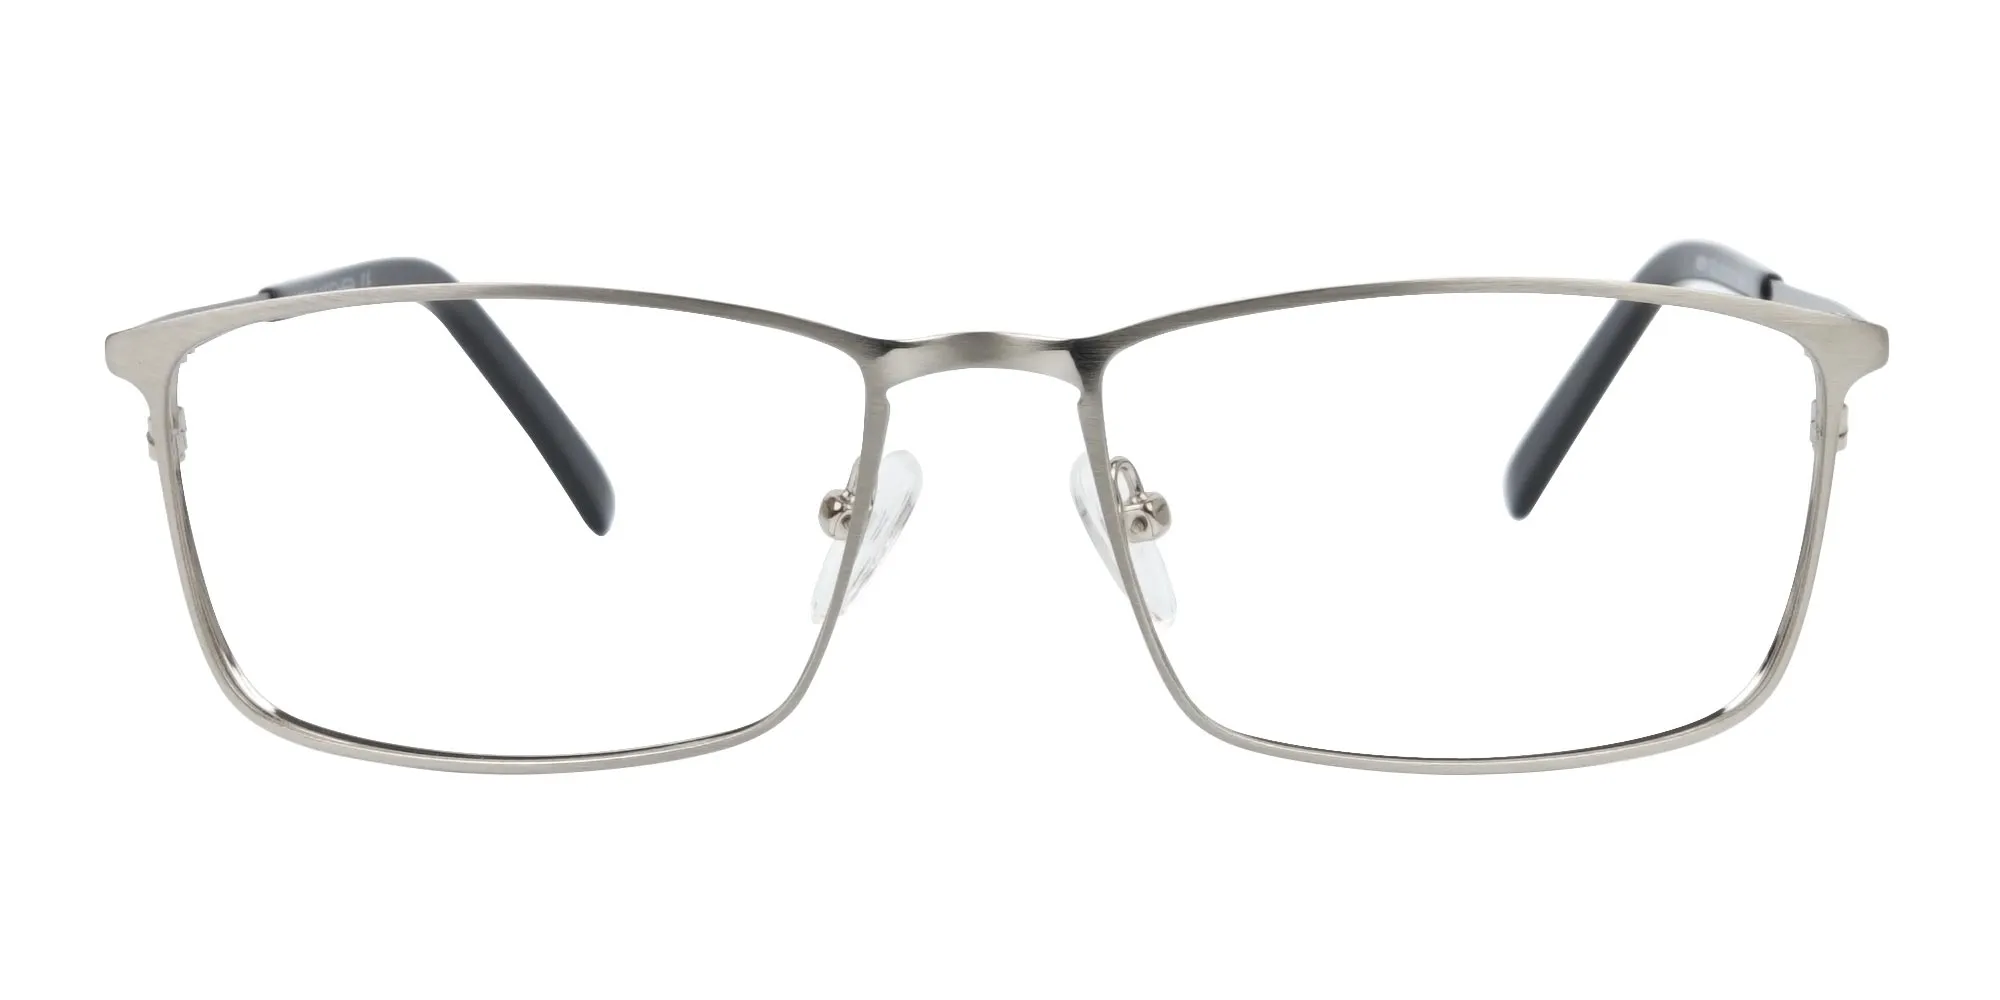 Silver Full-Rimmed Rectangular Glasses-2